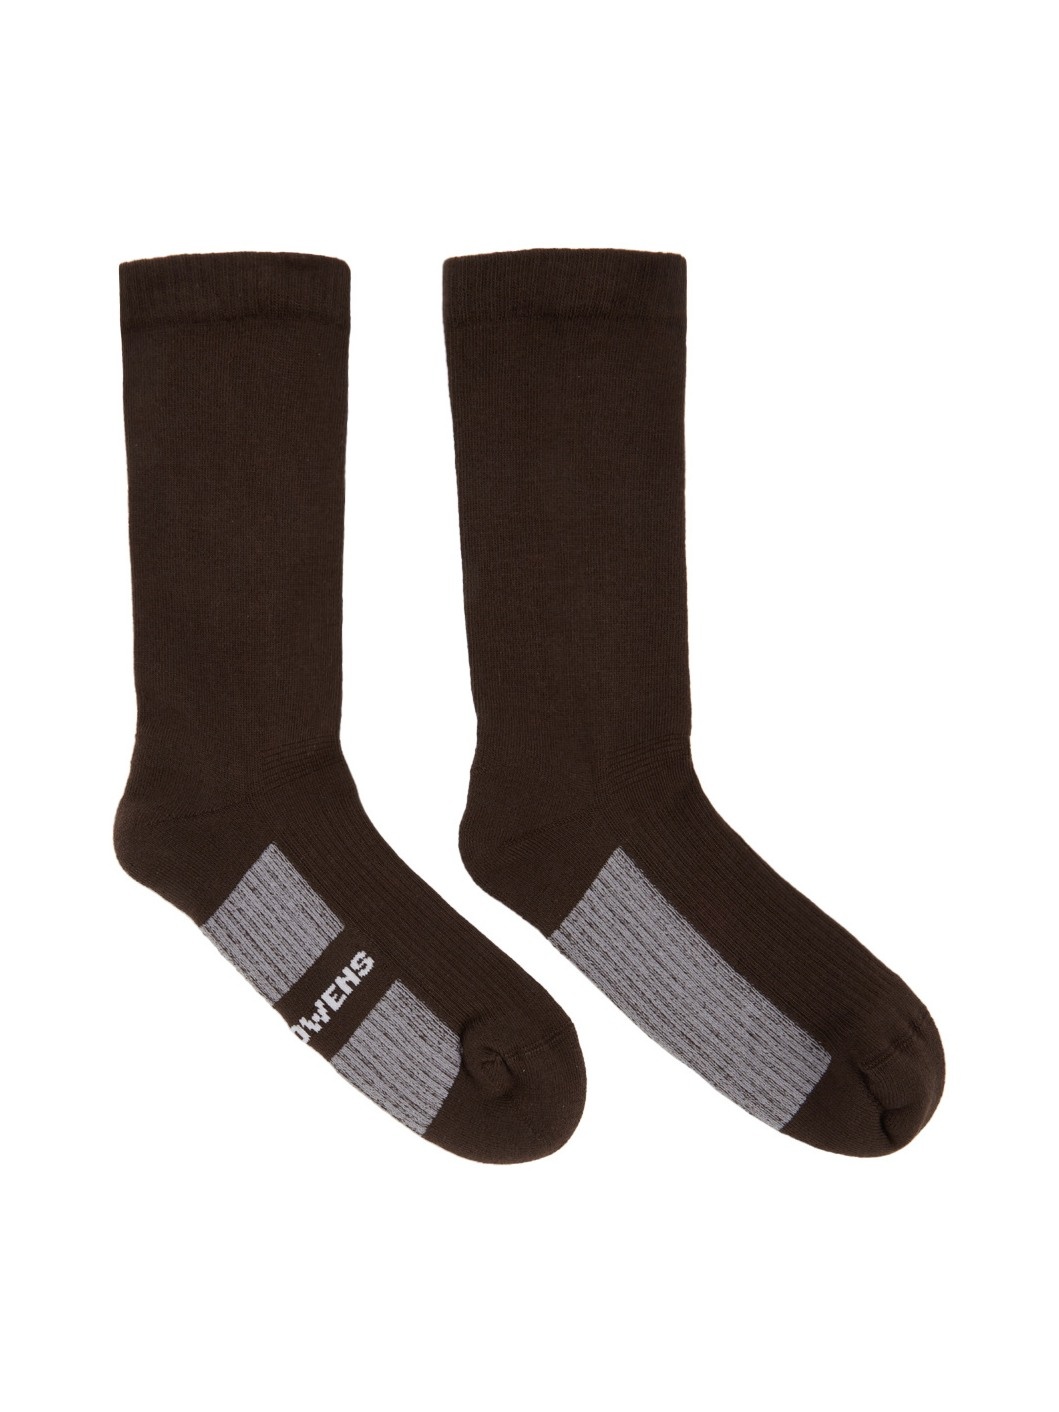 Brown Glitter Socks - 1